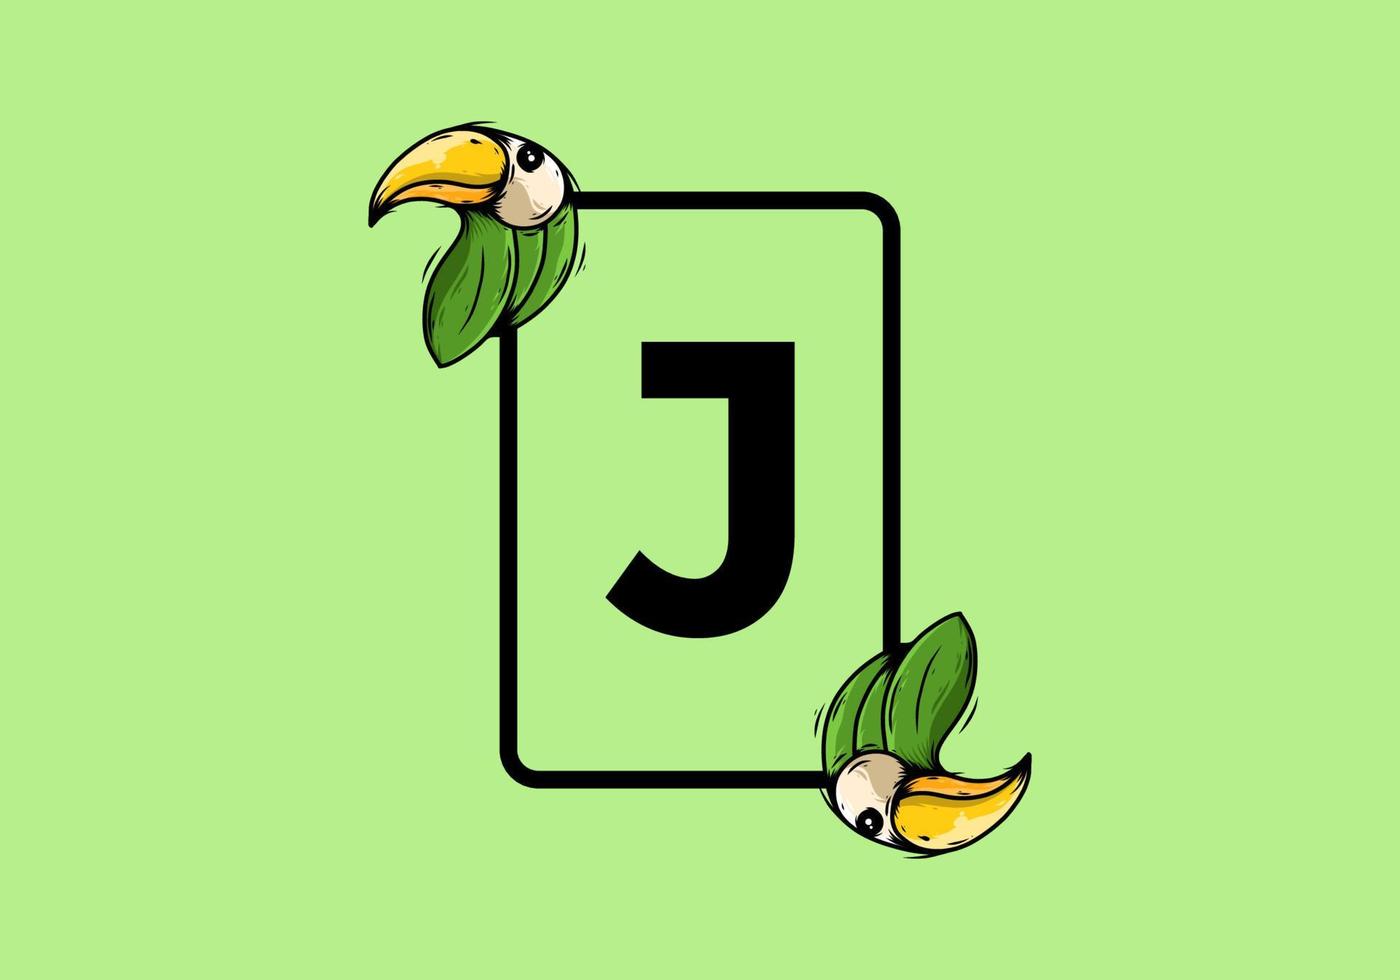 grüner vogel mit j anfangsbuchstaben vektor